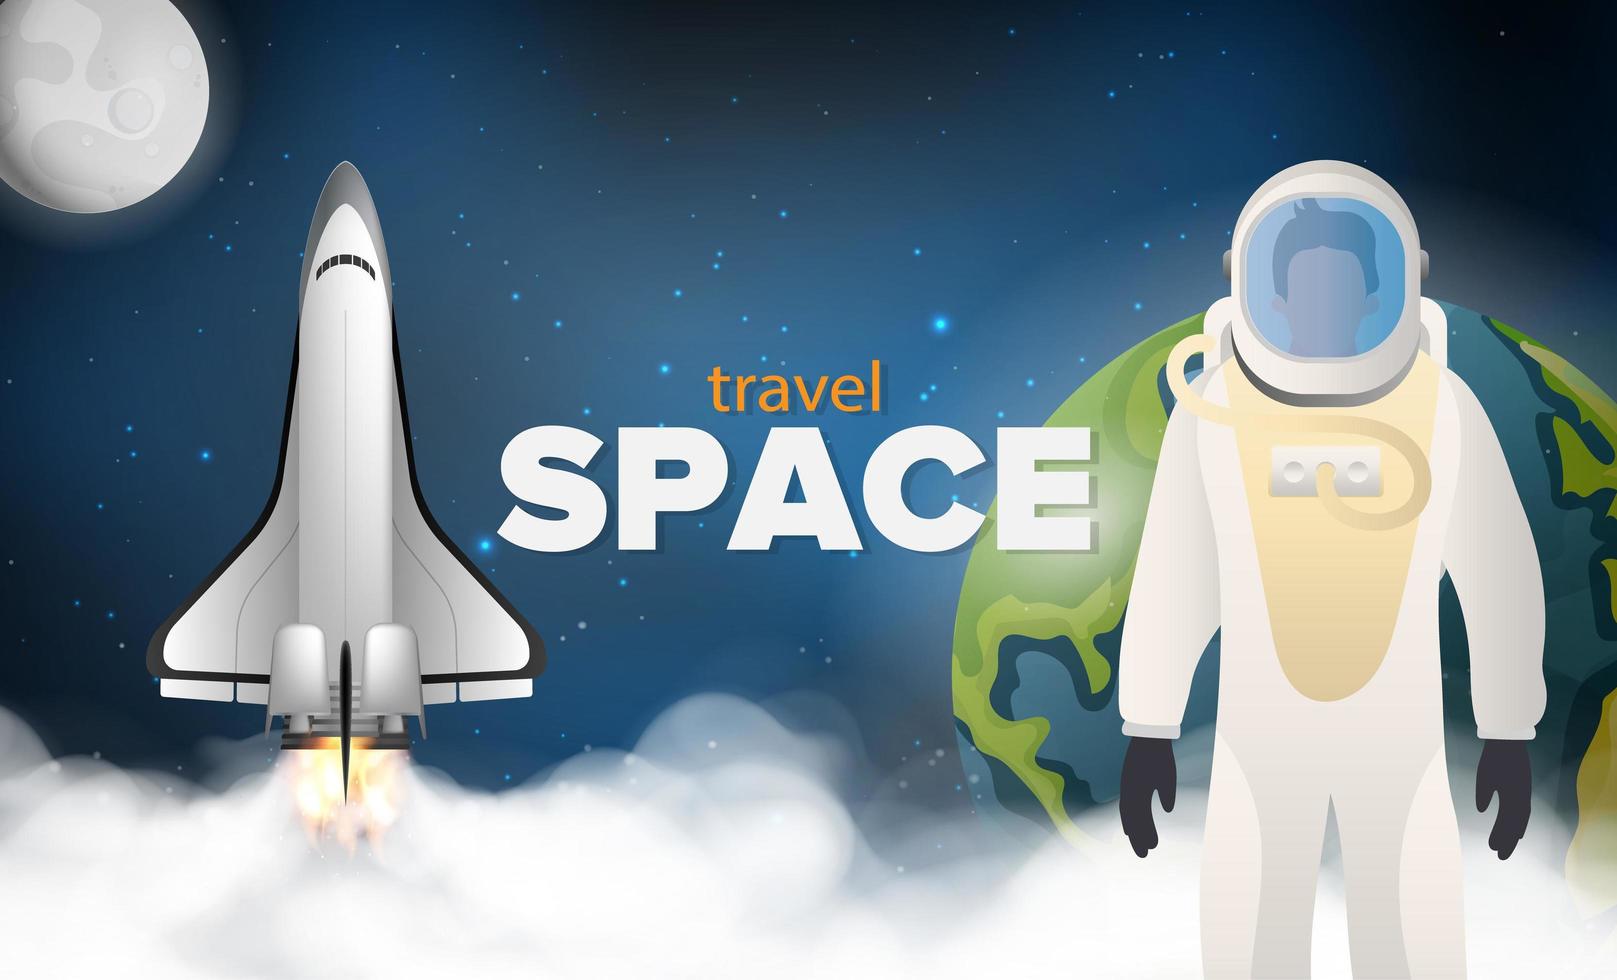 naar de ruimte reizen. een astronaut in een beschermend pak. een raket of shuttle vliegt in de ruimte tegen de achtergrond van de ruimte, de planeet aarde en de maan. realistische stijl. vectorillustratie. vector